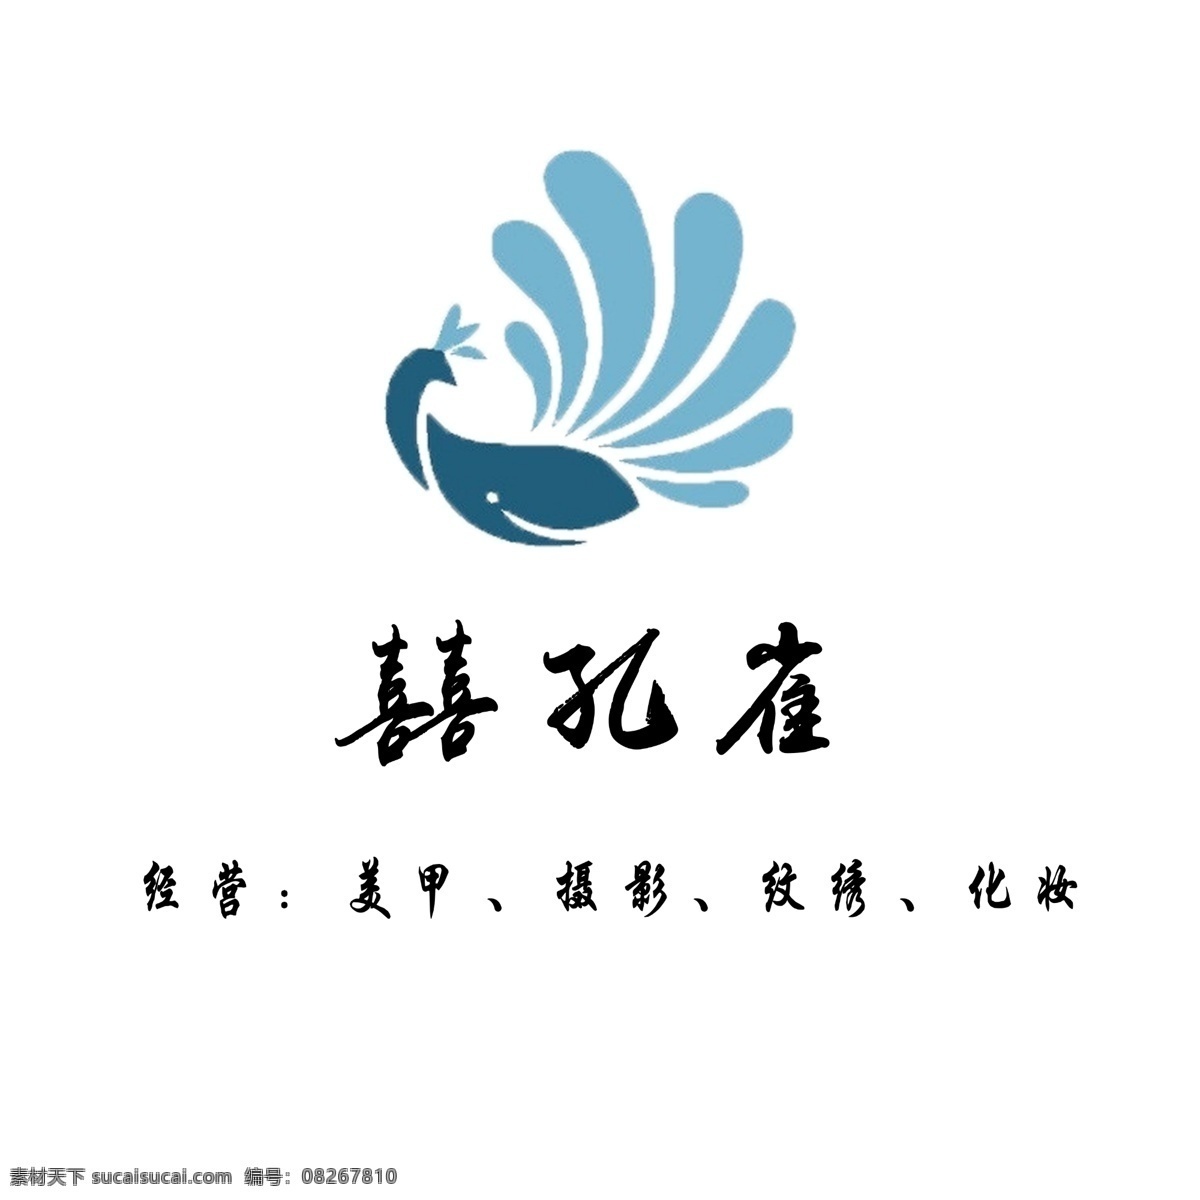 囍孔雀 logo 标志 lo go logo设计